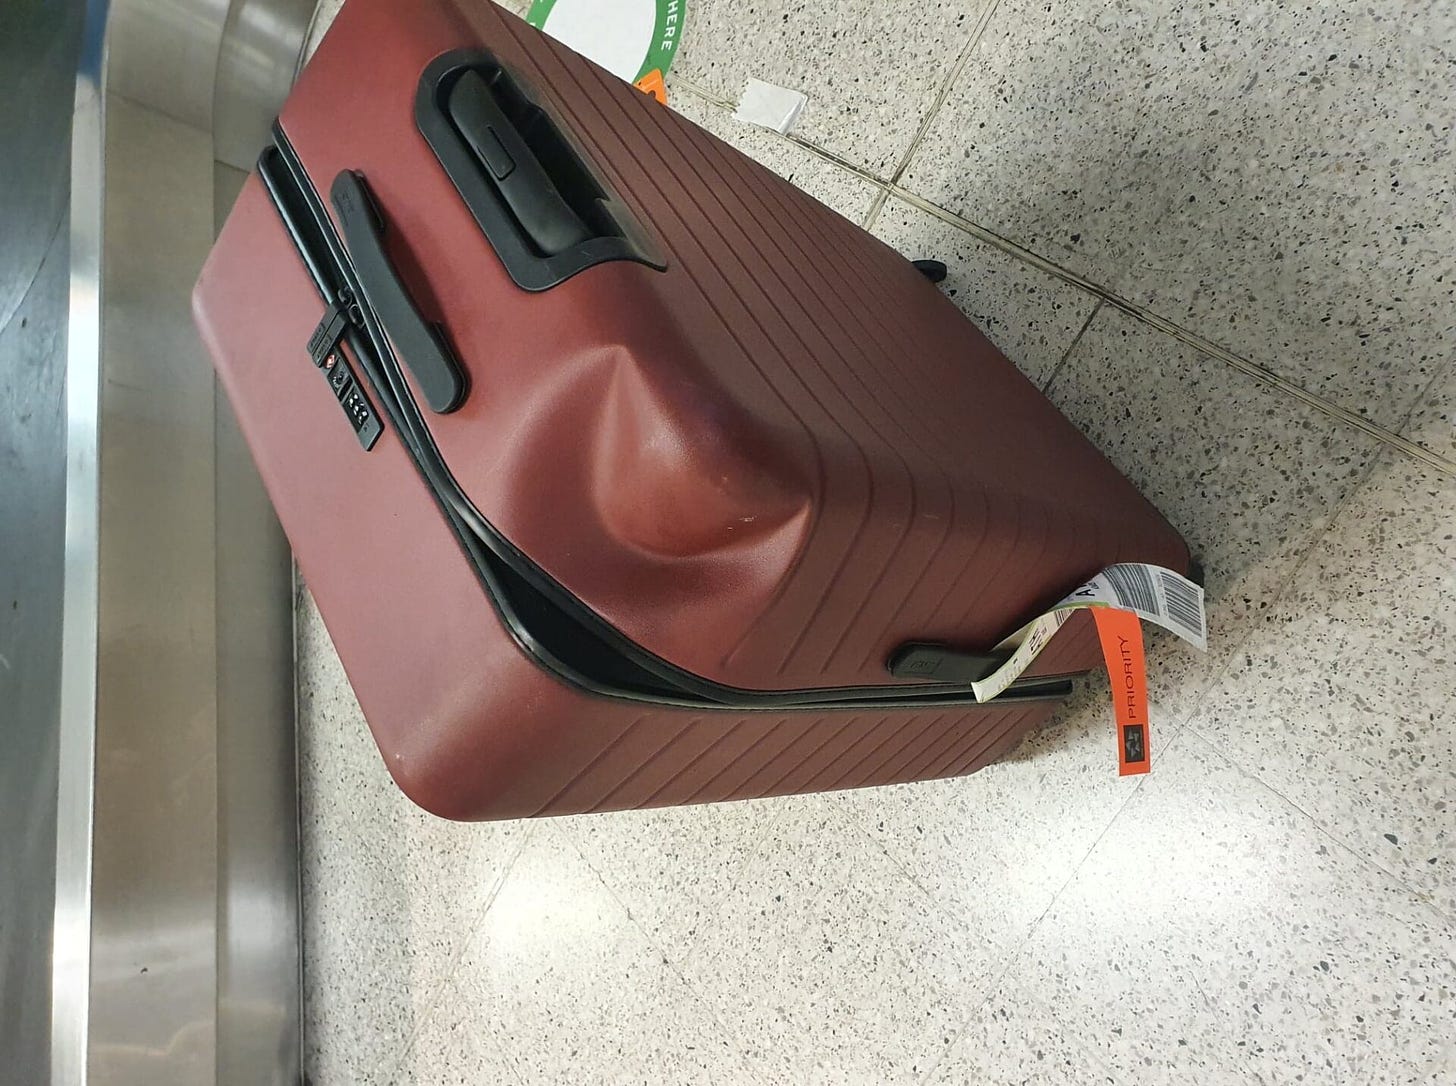 Damaged Luggage